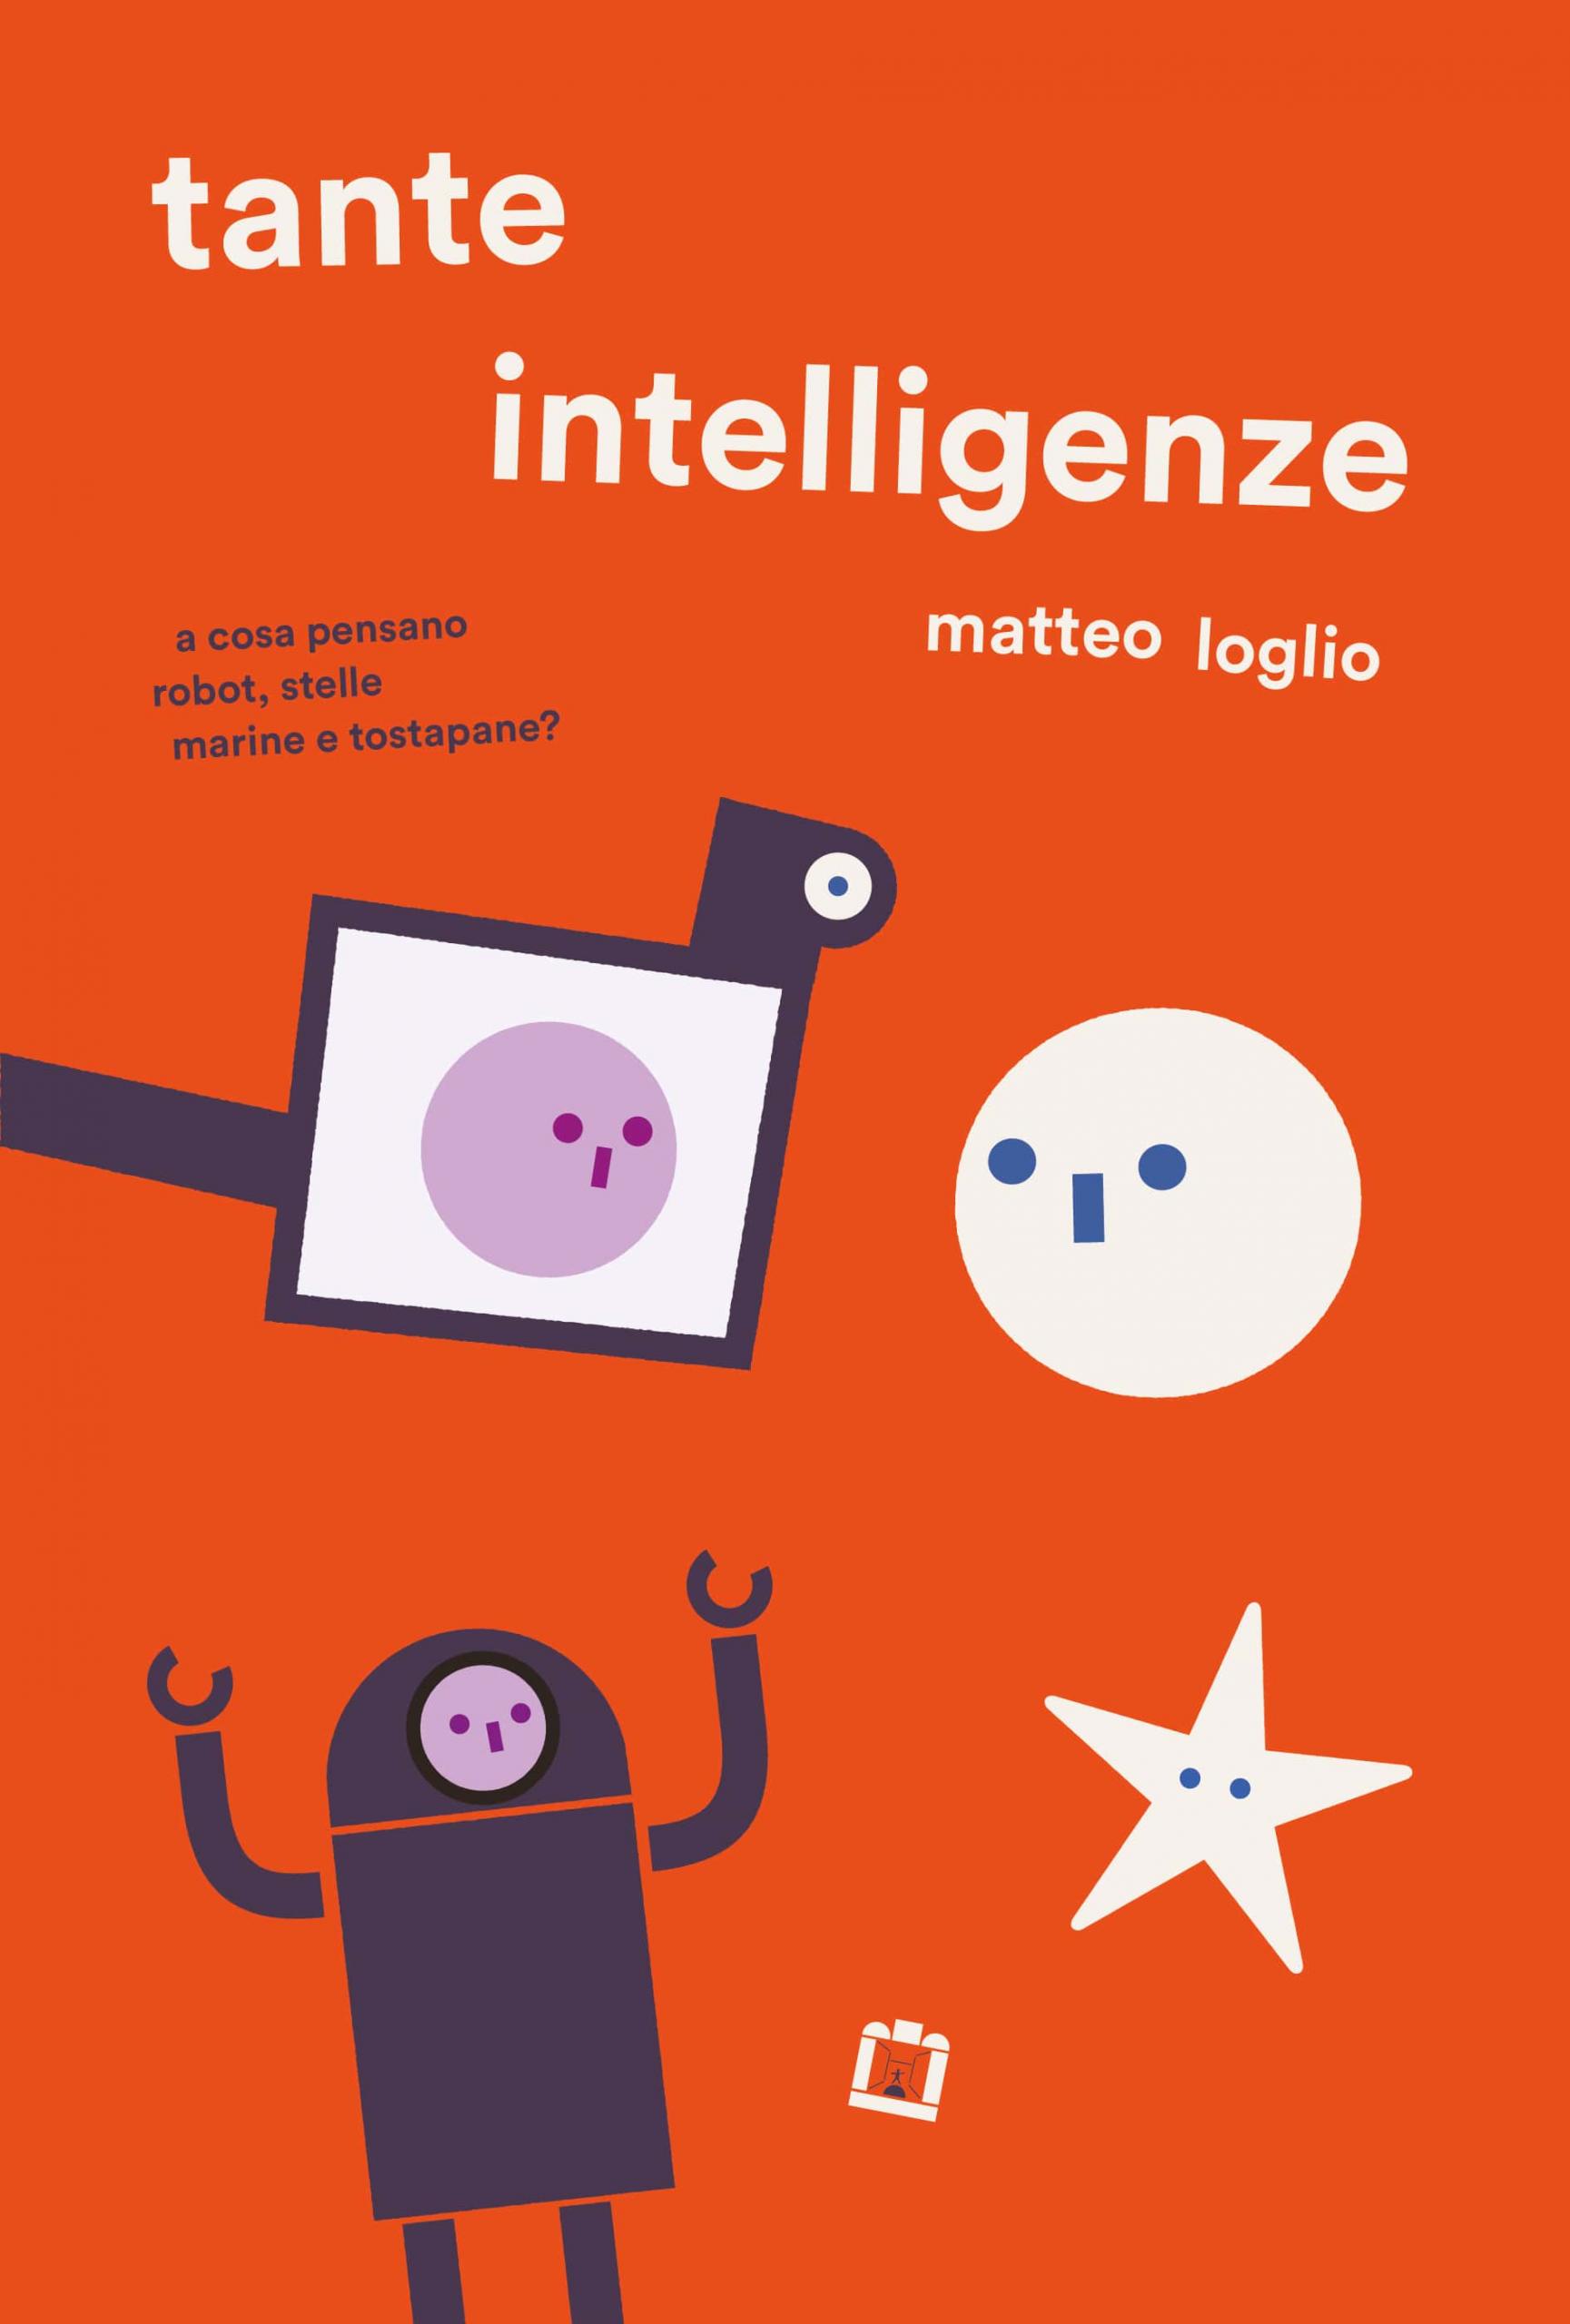 Tante intelligenze di Matteo Loglio, libri per bambini 2021